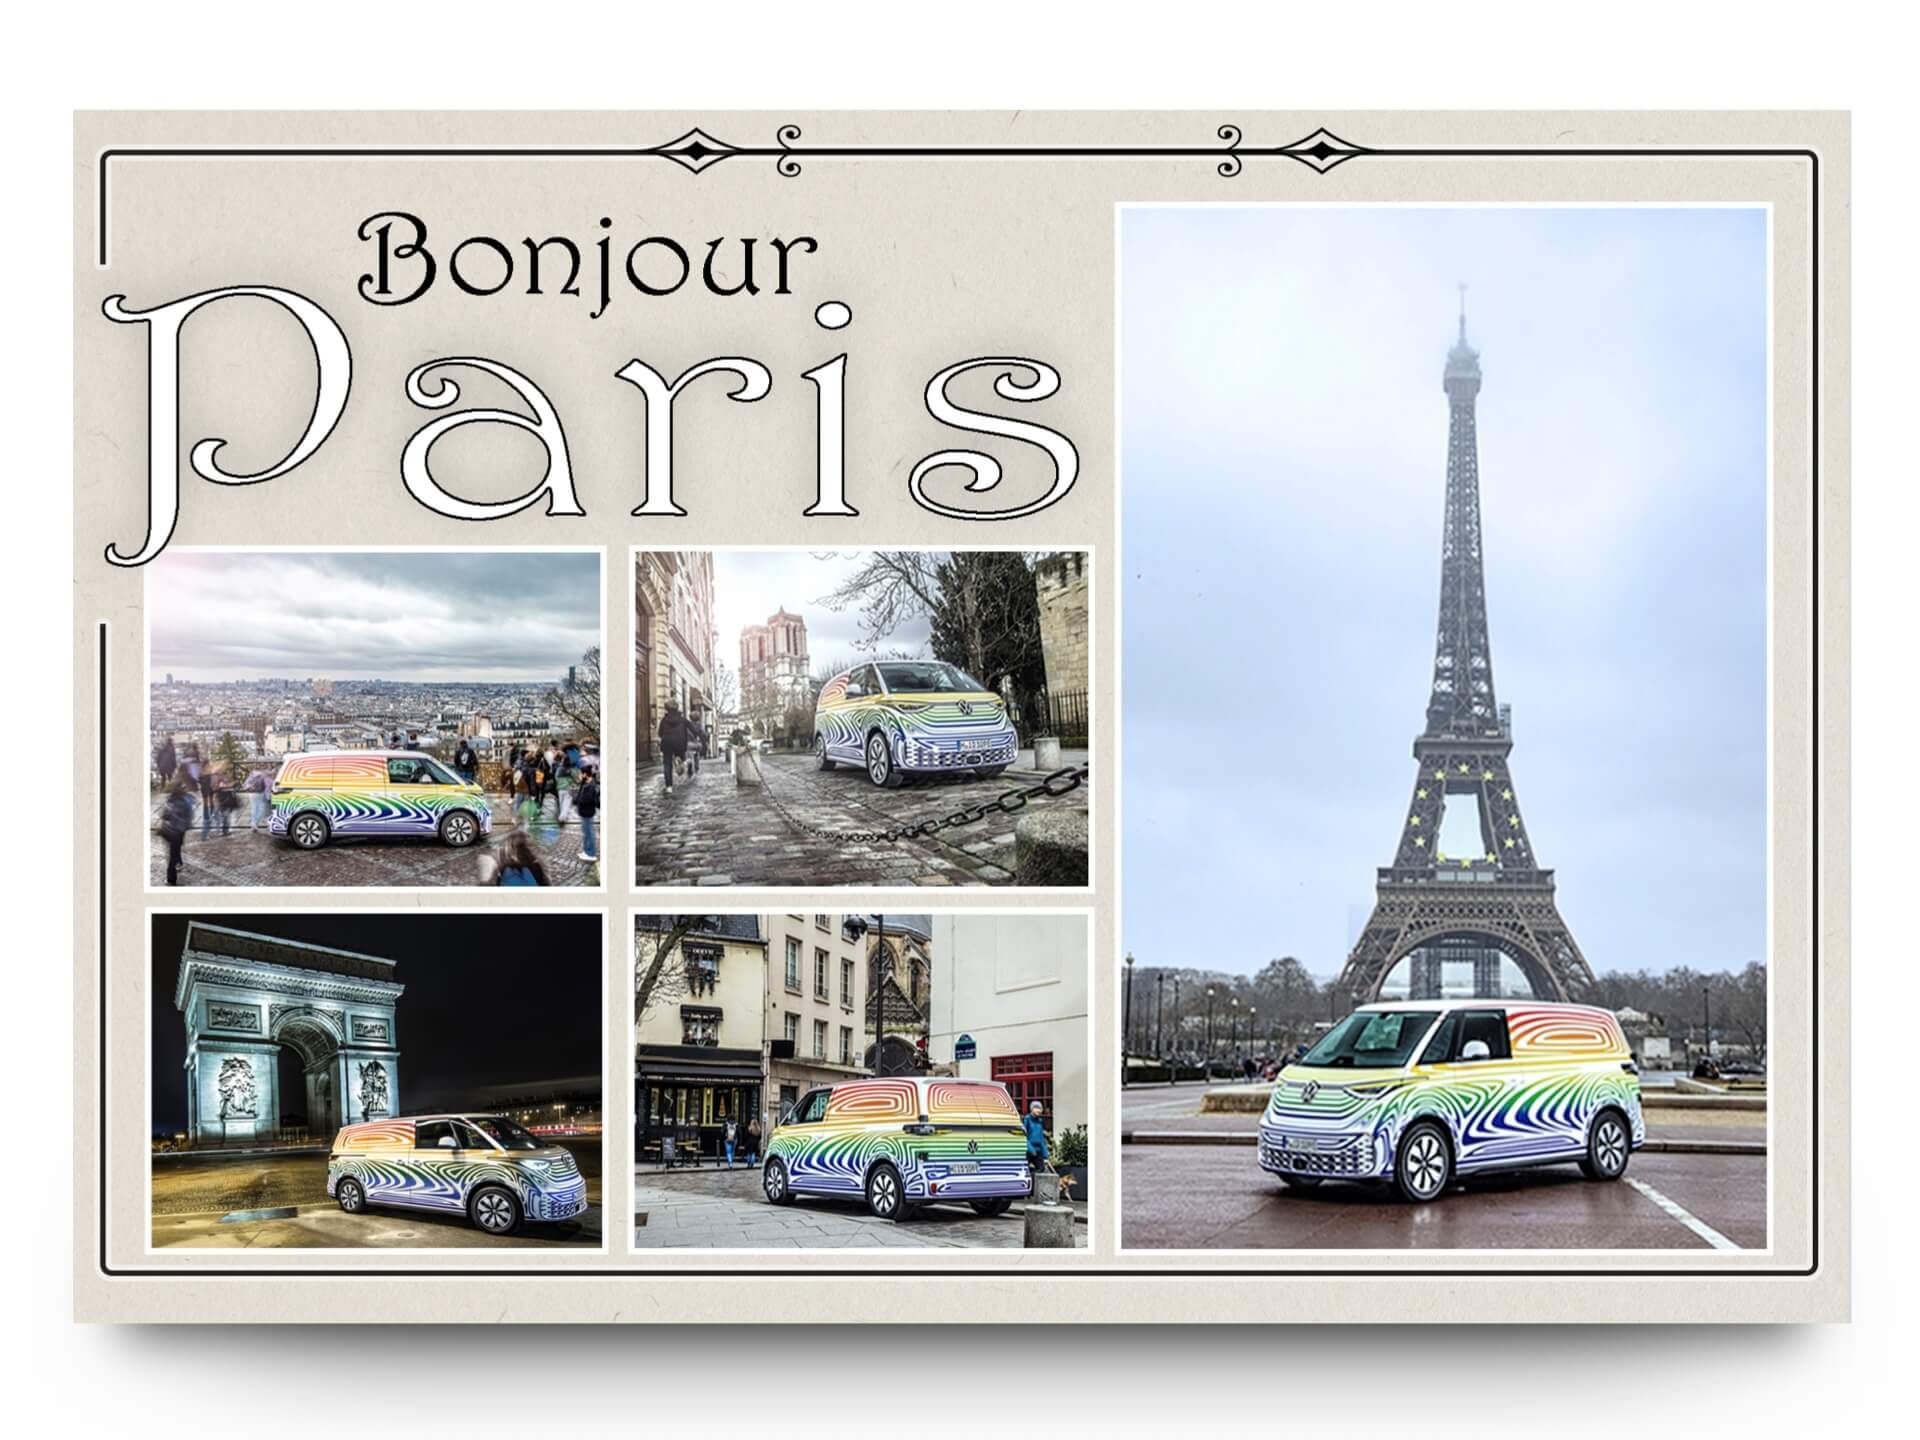 VW ID. Buzz im bunten Camouflage in Paris beim Eiffelturm und Triumphbogen